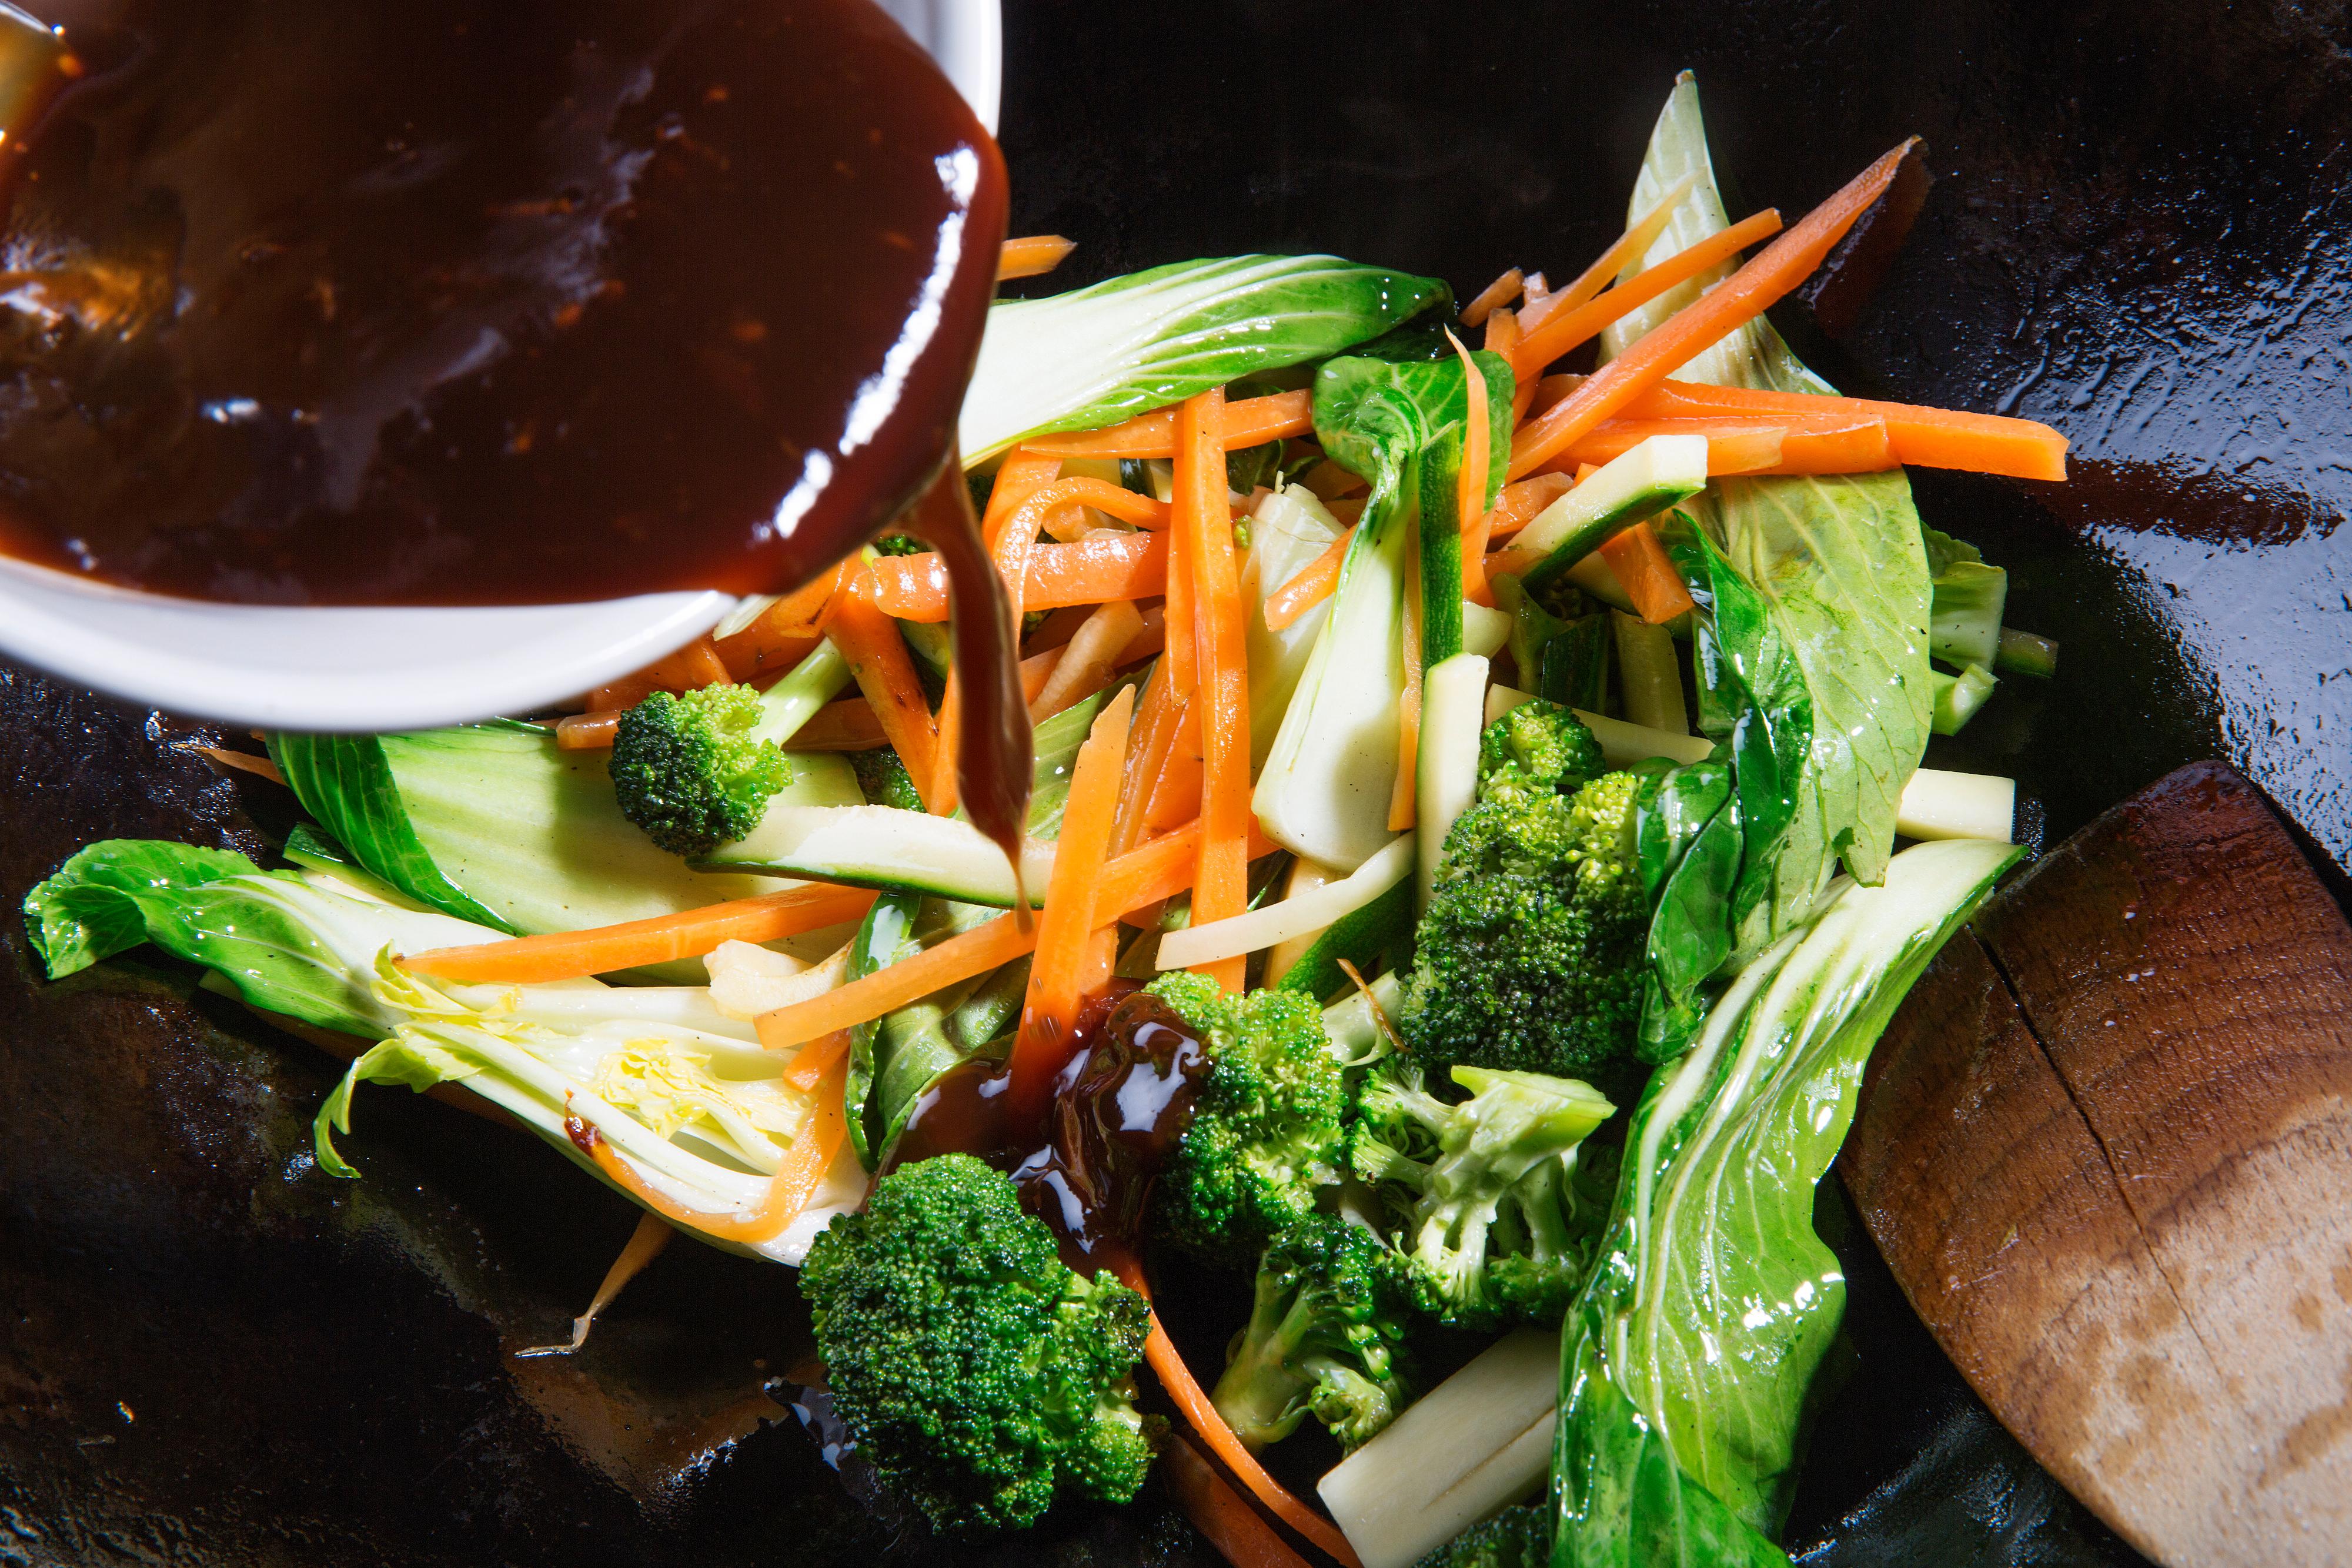 Varm olje i wokpanne. Start med gulrøttene og chili, før squash og broccoli tilsettes. Wok grønnsakene lett før grovkuttet pak choy-salat has i. Ta pannen fra varmen og rør inn teryiakisausen.